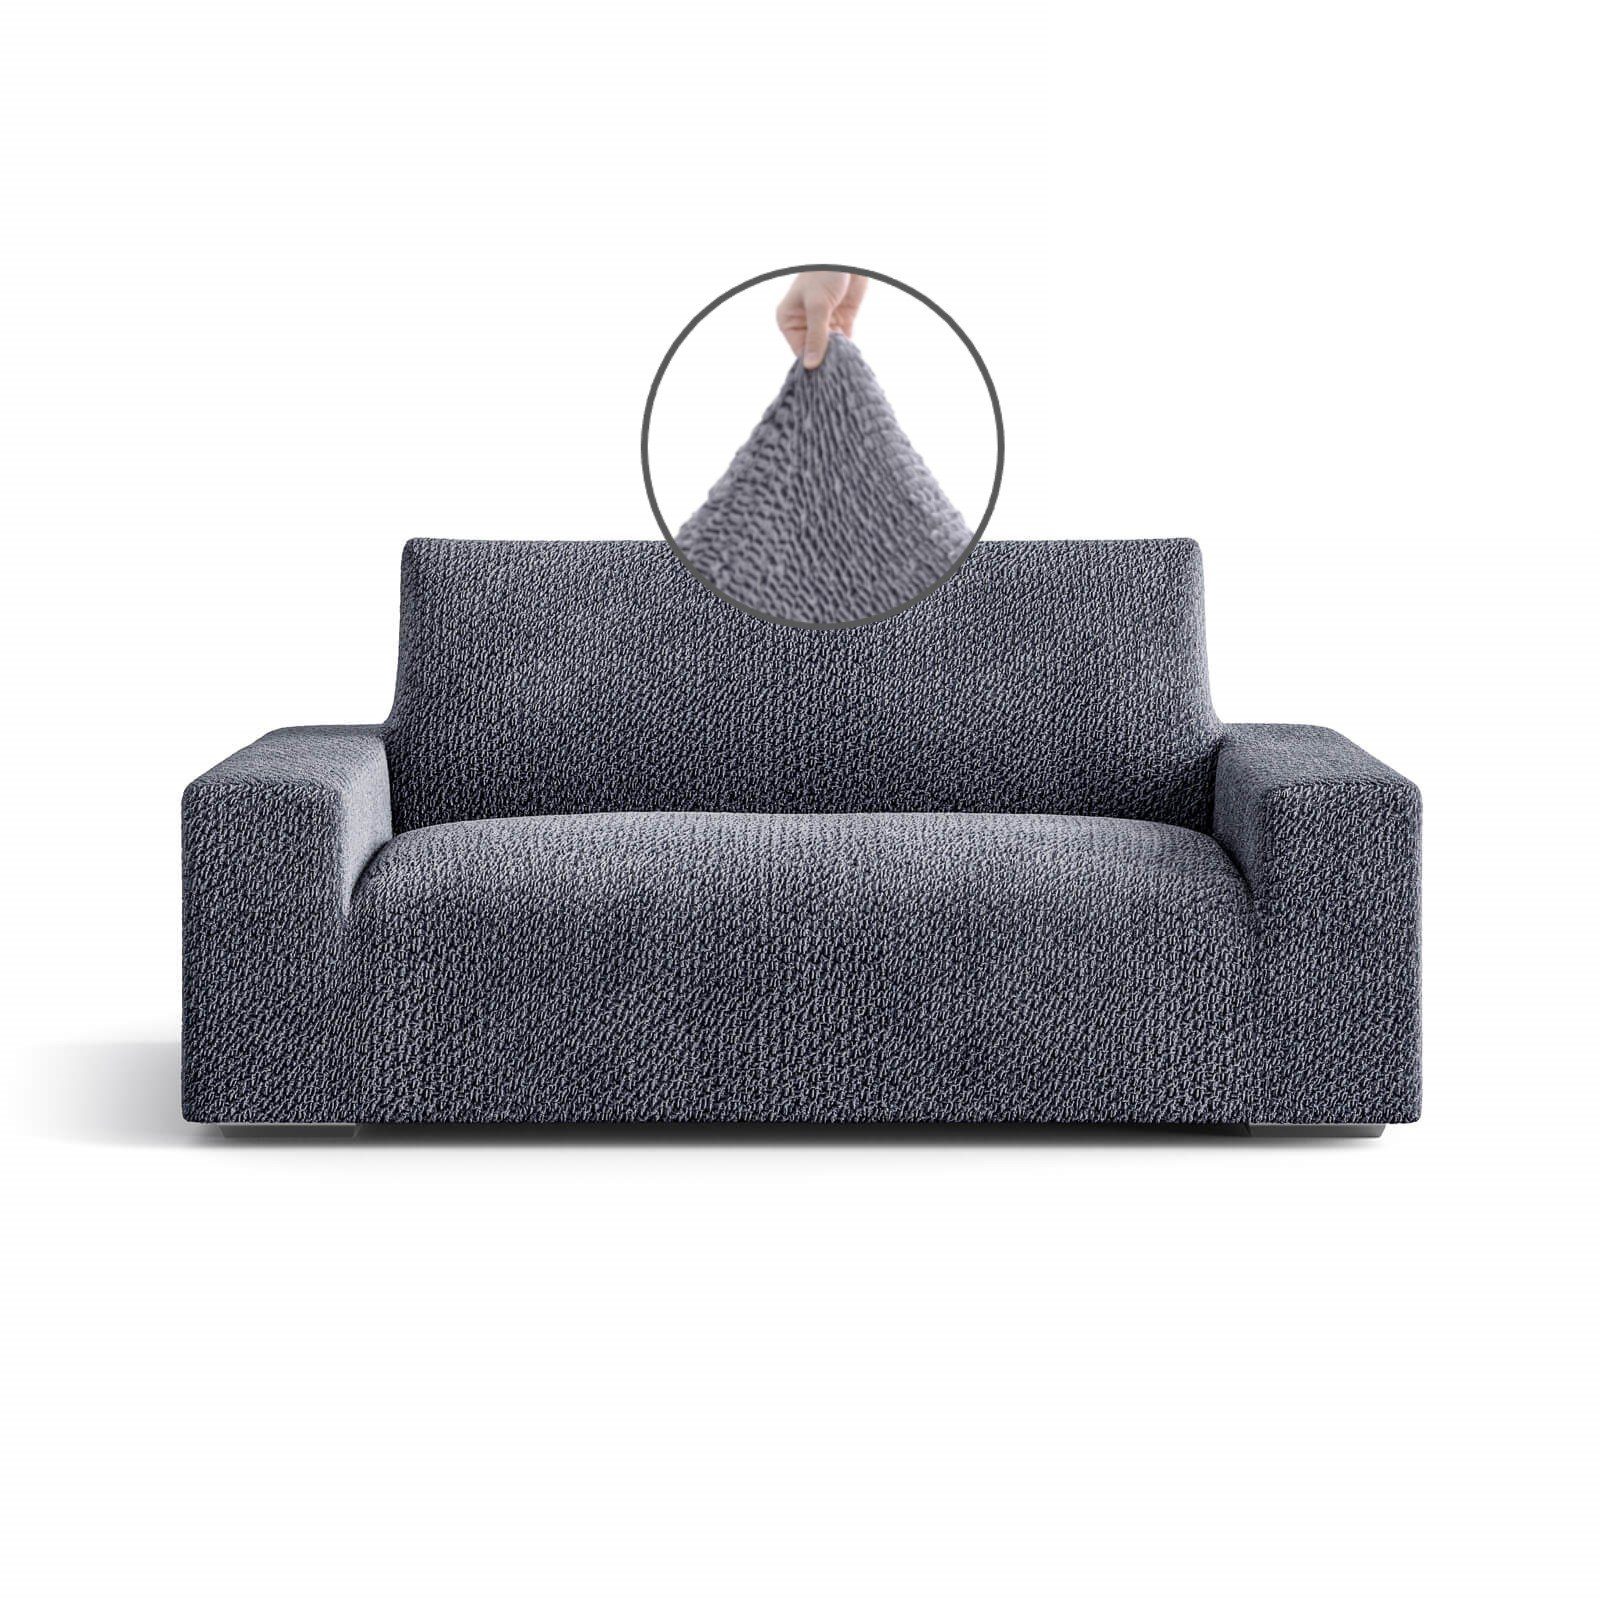 Sofahusse luxuriöser und edler Sofabezug, italienische Handarbeit, Paulato by GA.I.CO, Samt-Kollektion - robust, gemütlich, flauschig grau